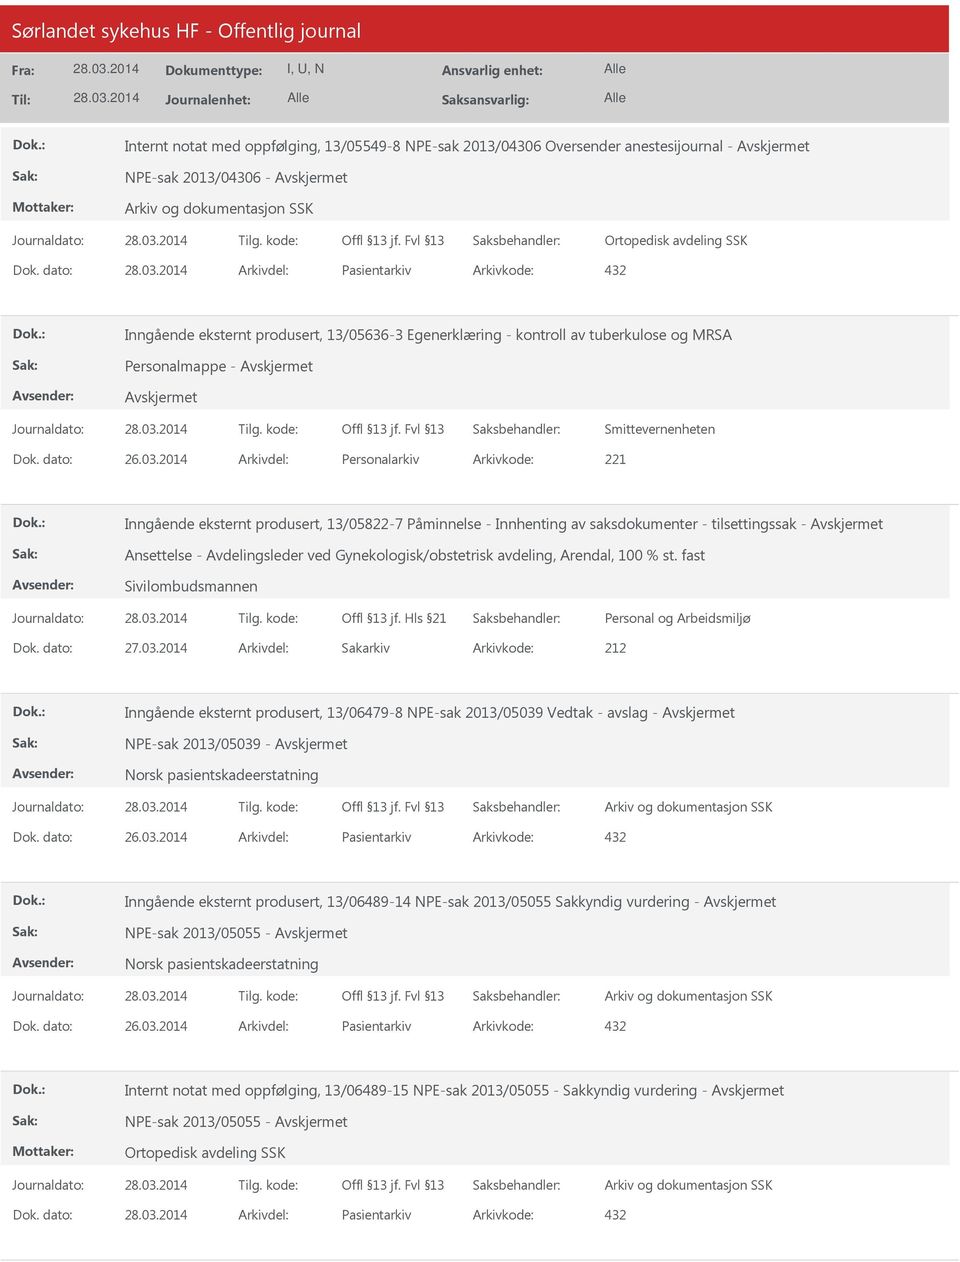 2014 Arkivdel: Personalarkiv Arkivkode: 221 Inngående eksternt produsert, 13/05822-7 Påminnelse - Innhenting av saksdokumenter - tilsettingssak - Ansettelse - Avdelingsleder ved